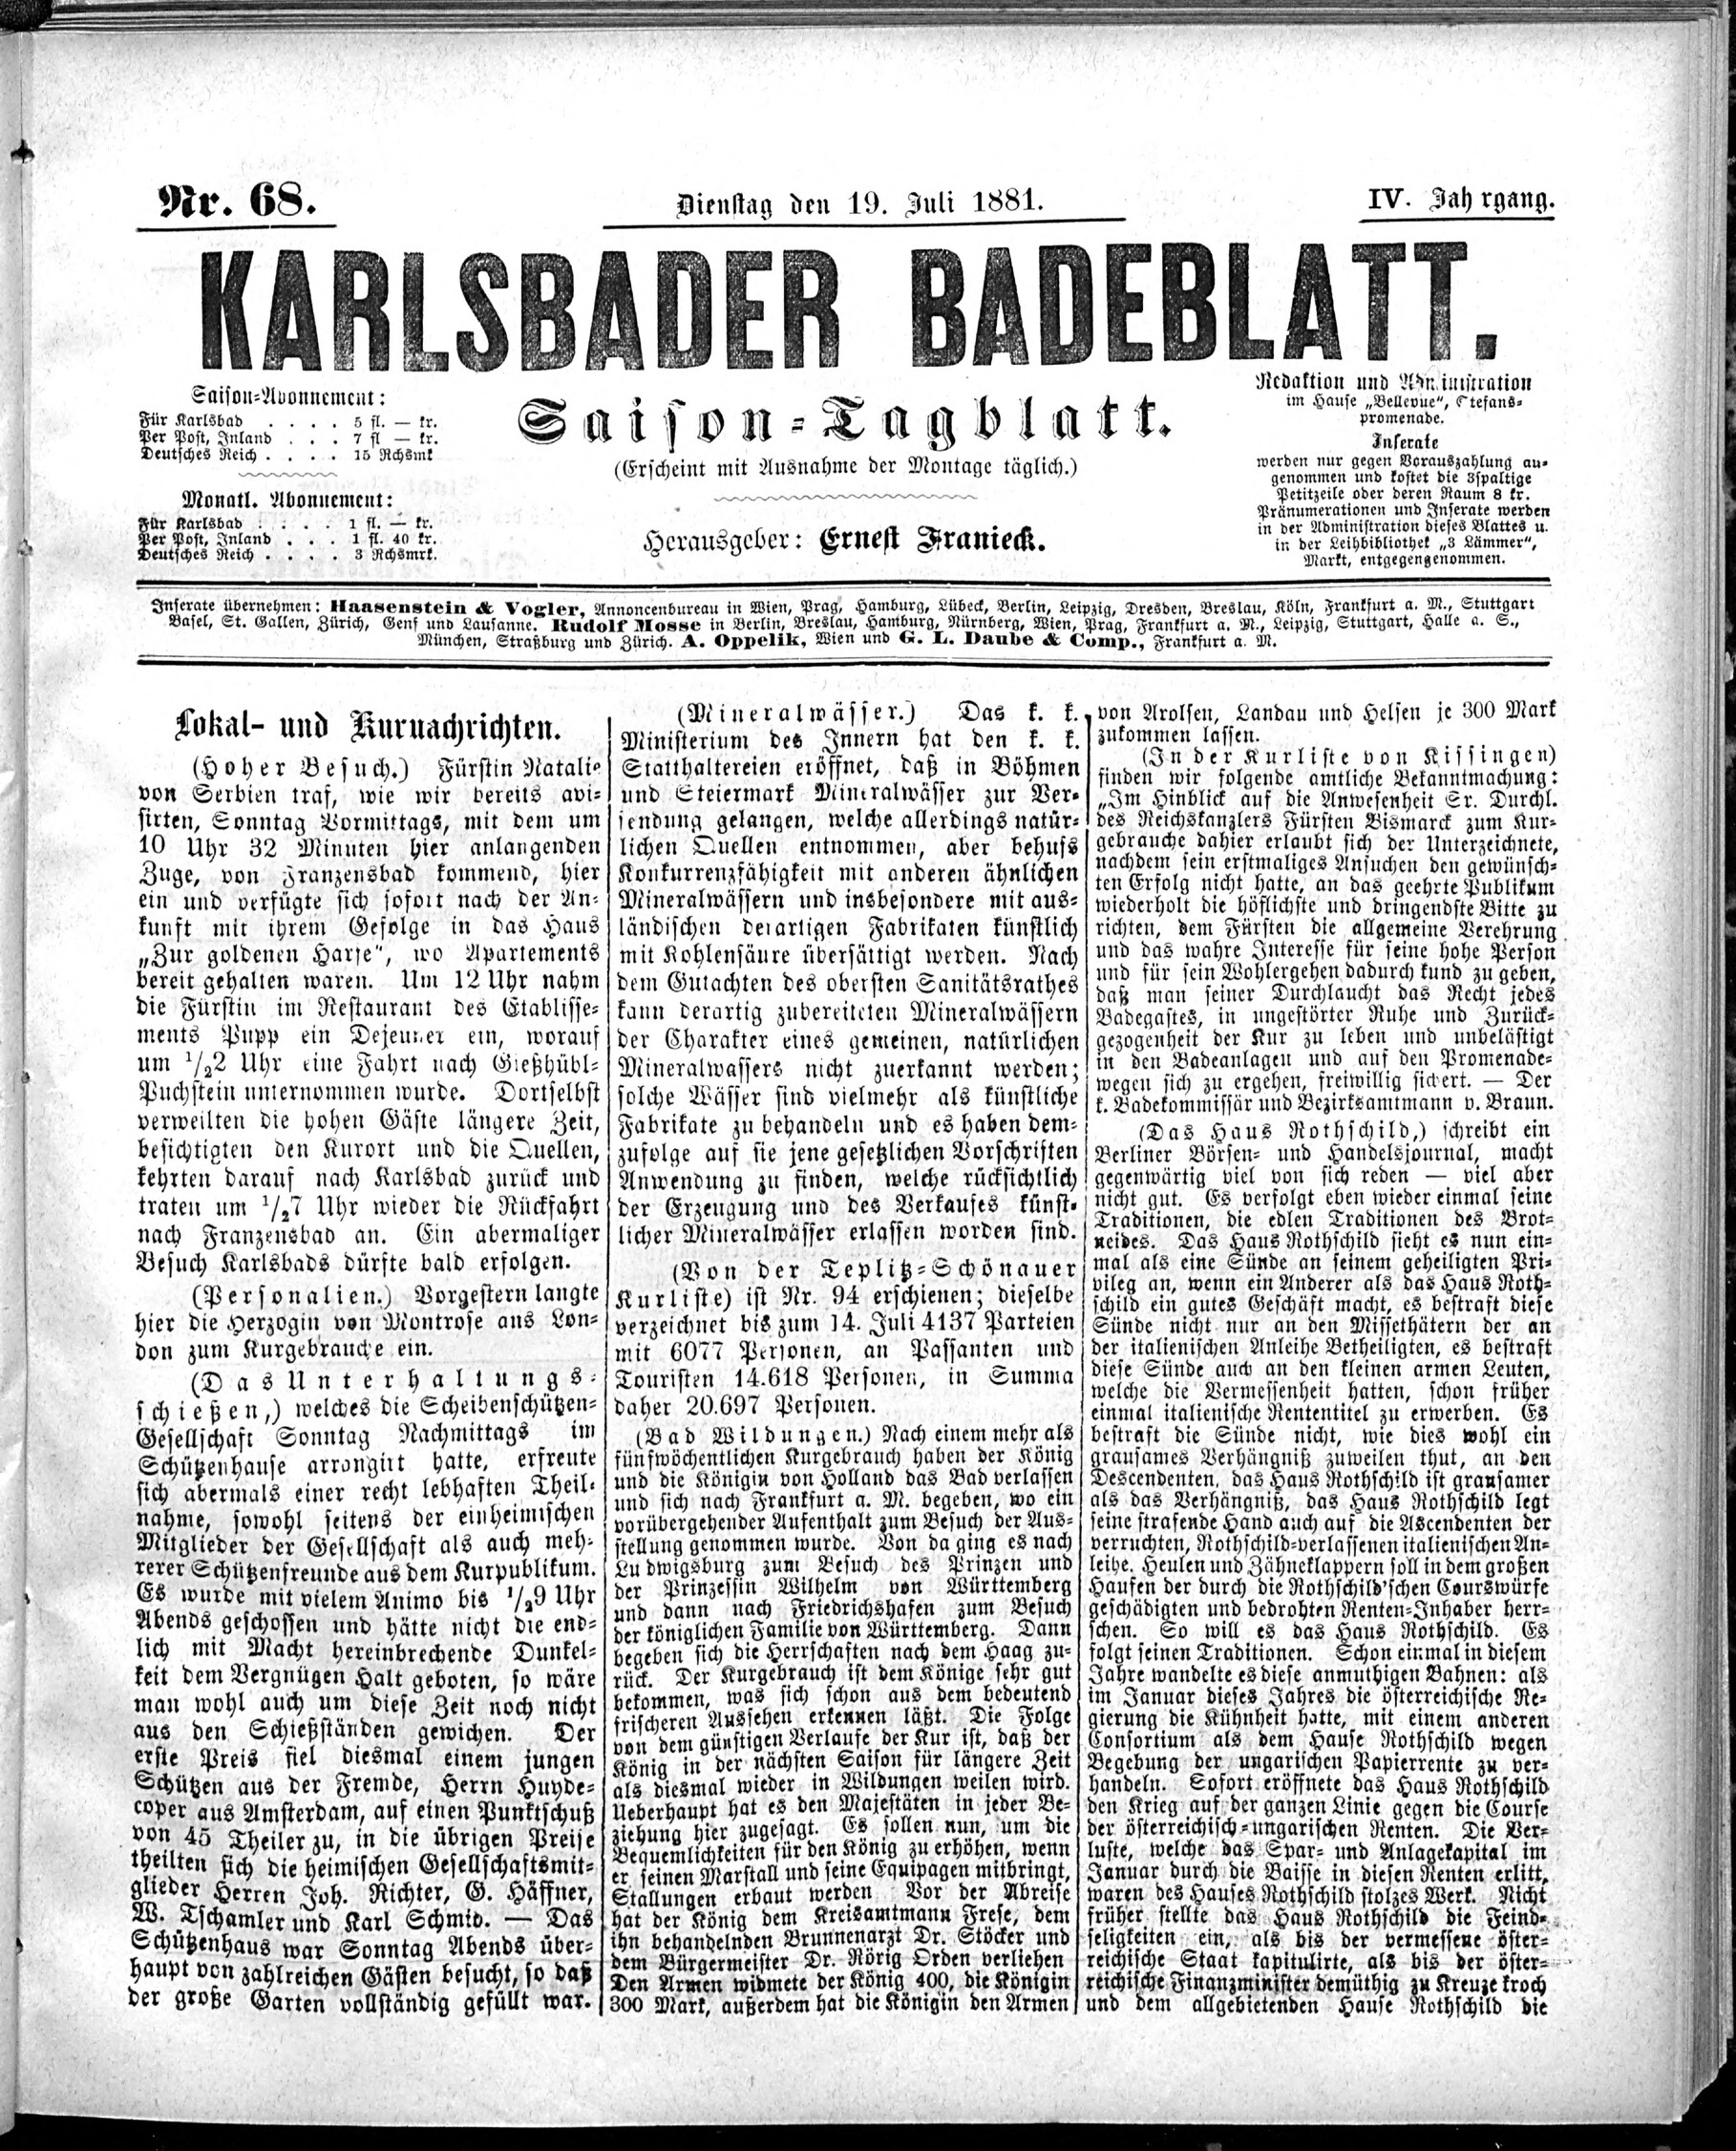 1. karlsbader-badeblatt-1881-07-19-n68_1405